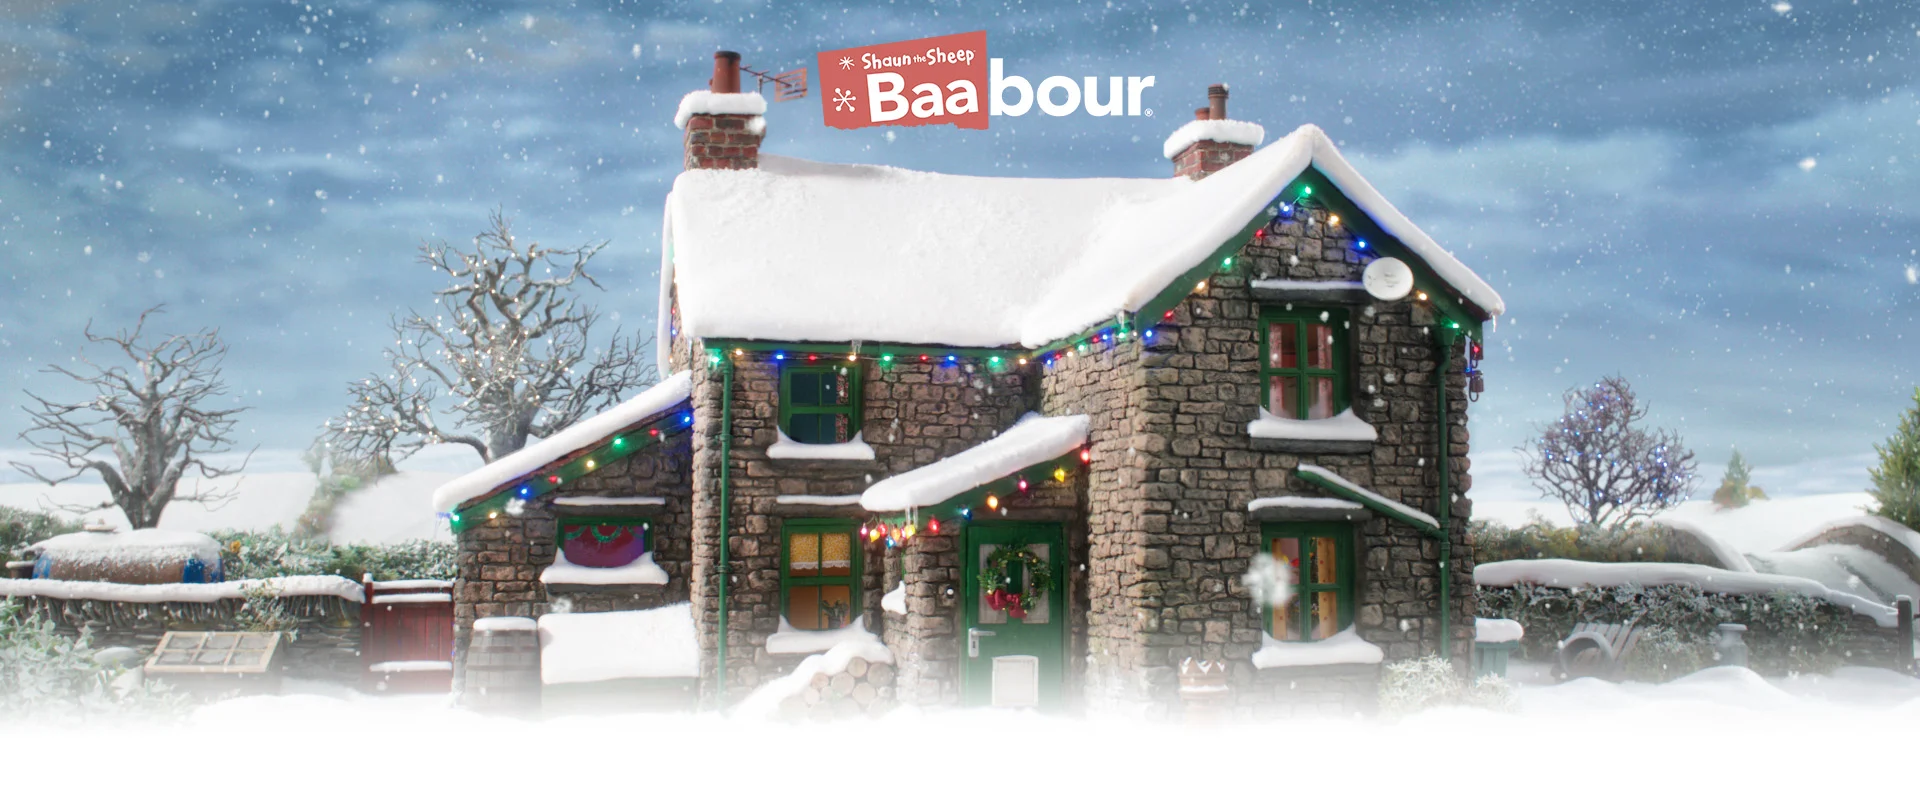 Baa-bour at Christmas | 1